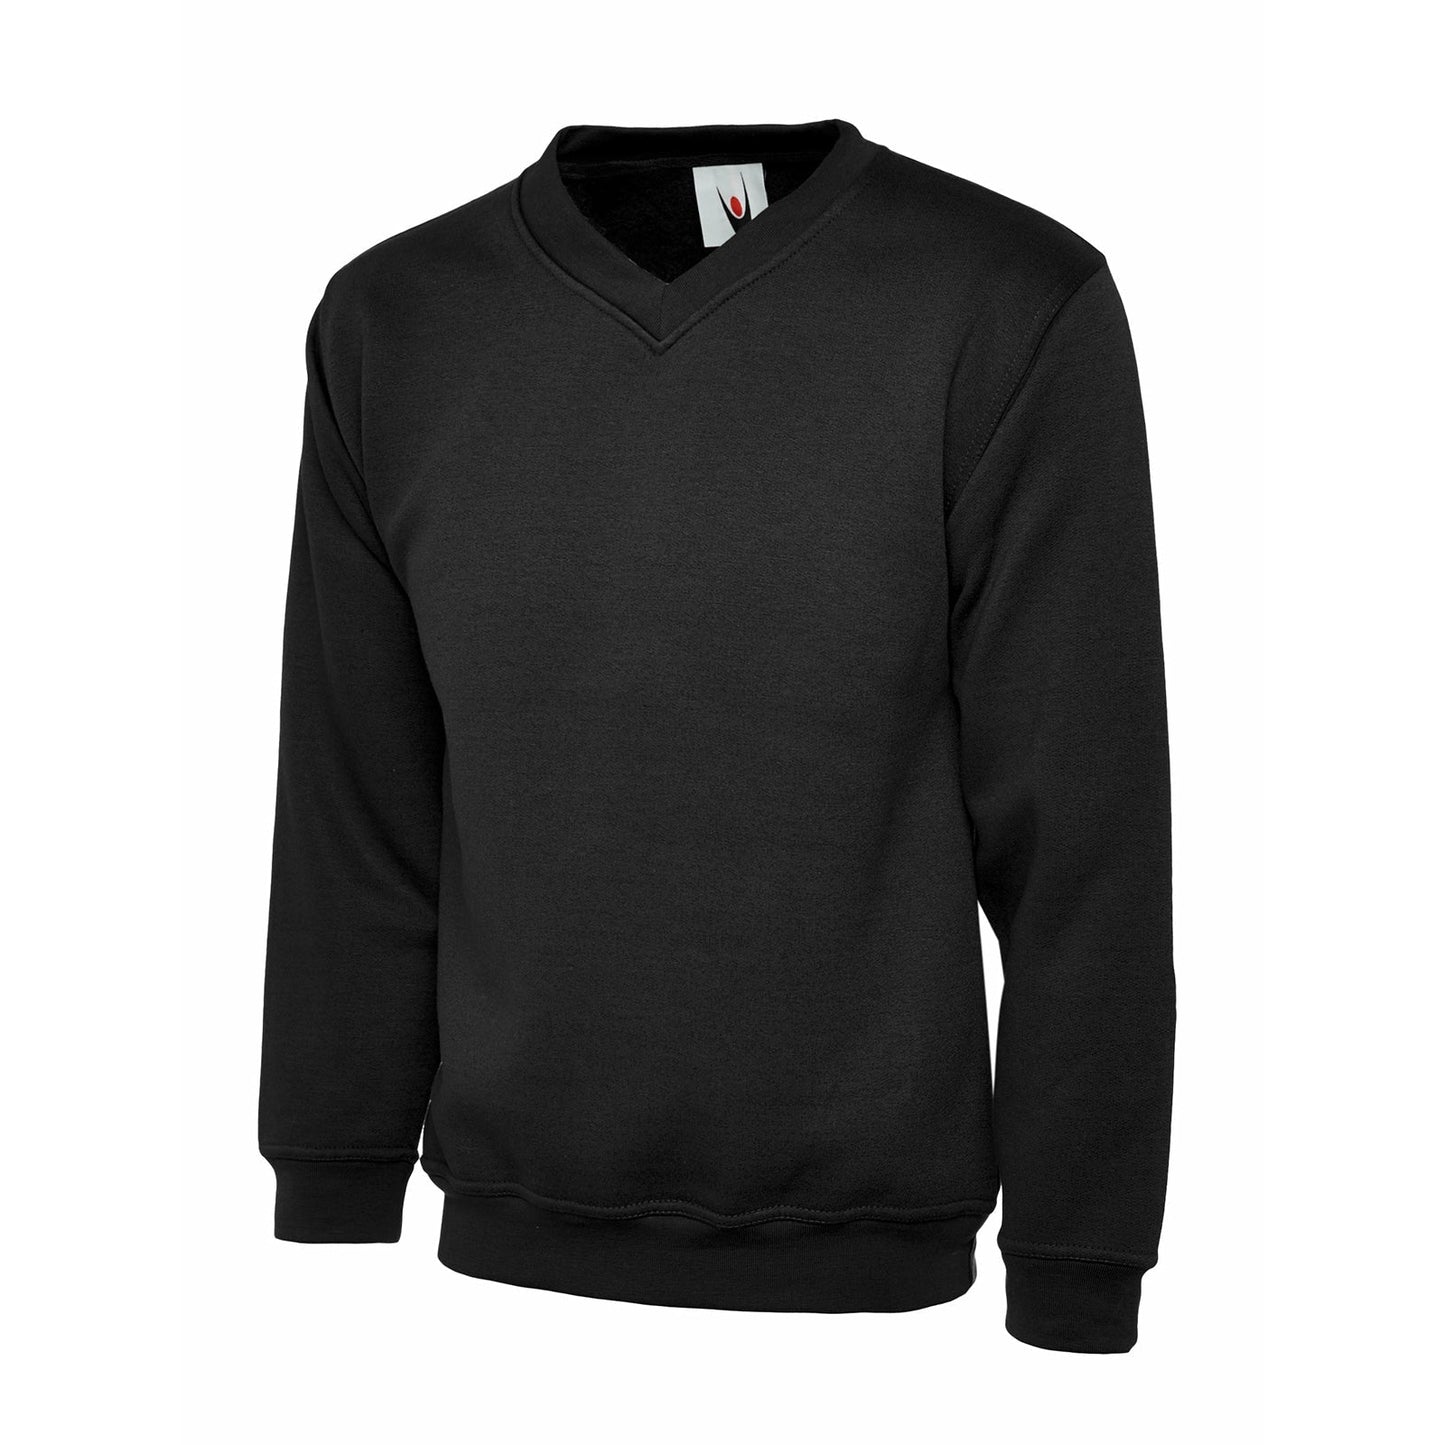 Black v-neck sweater